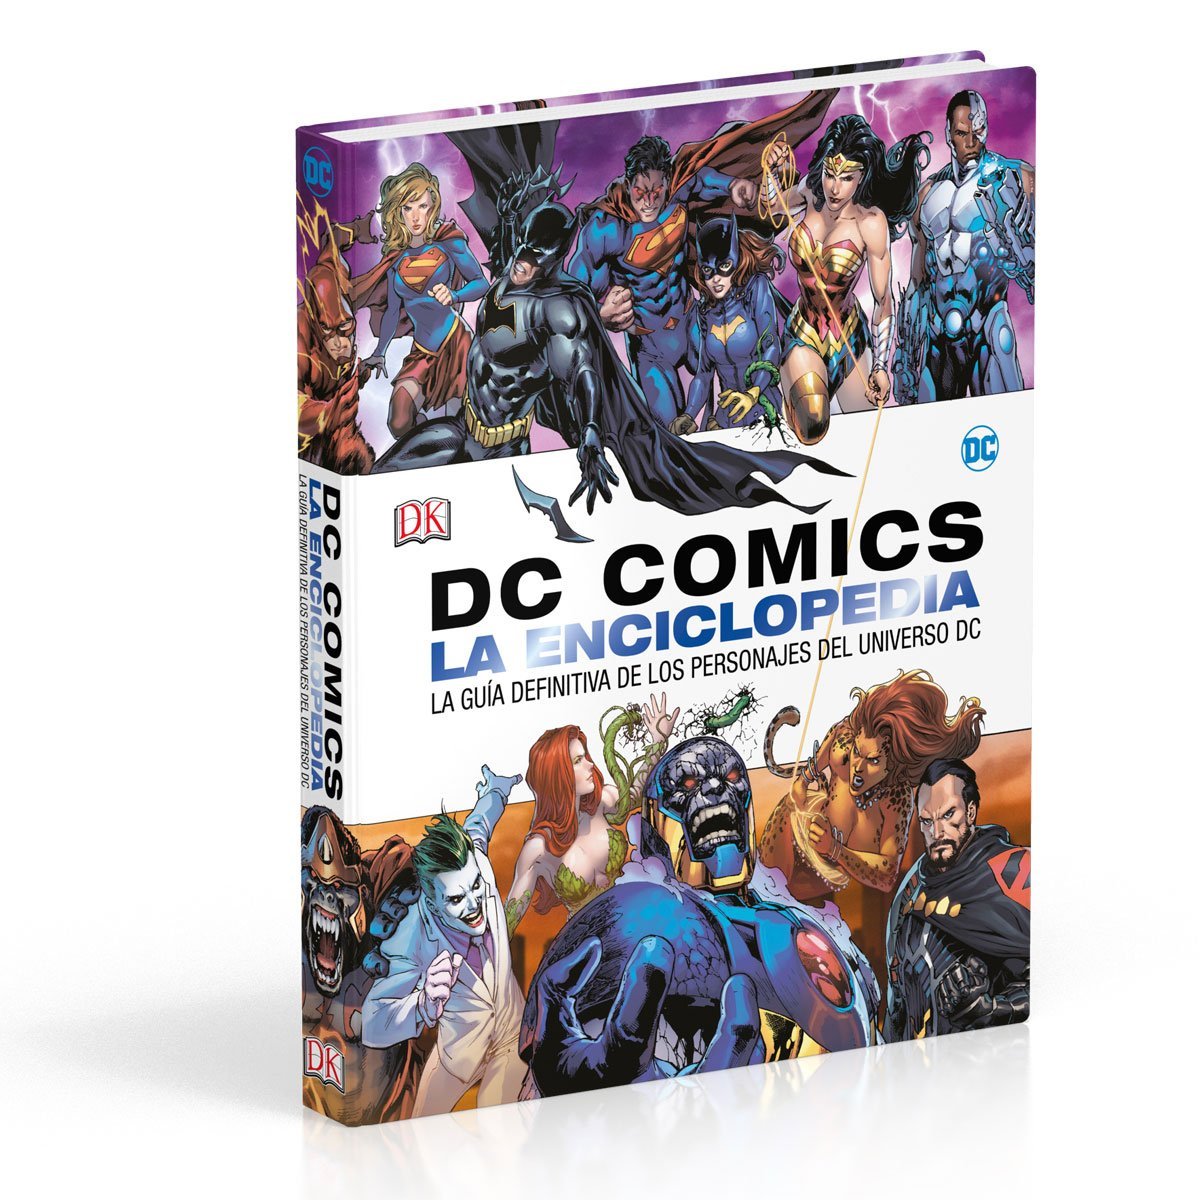 Dc Comics la Enciclopedia Dk